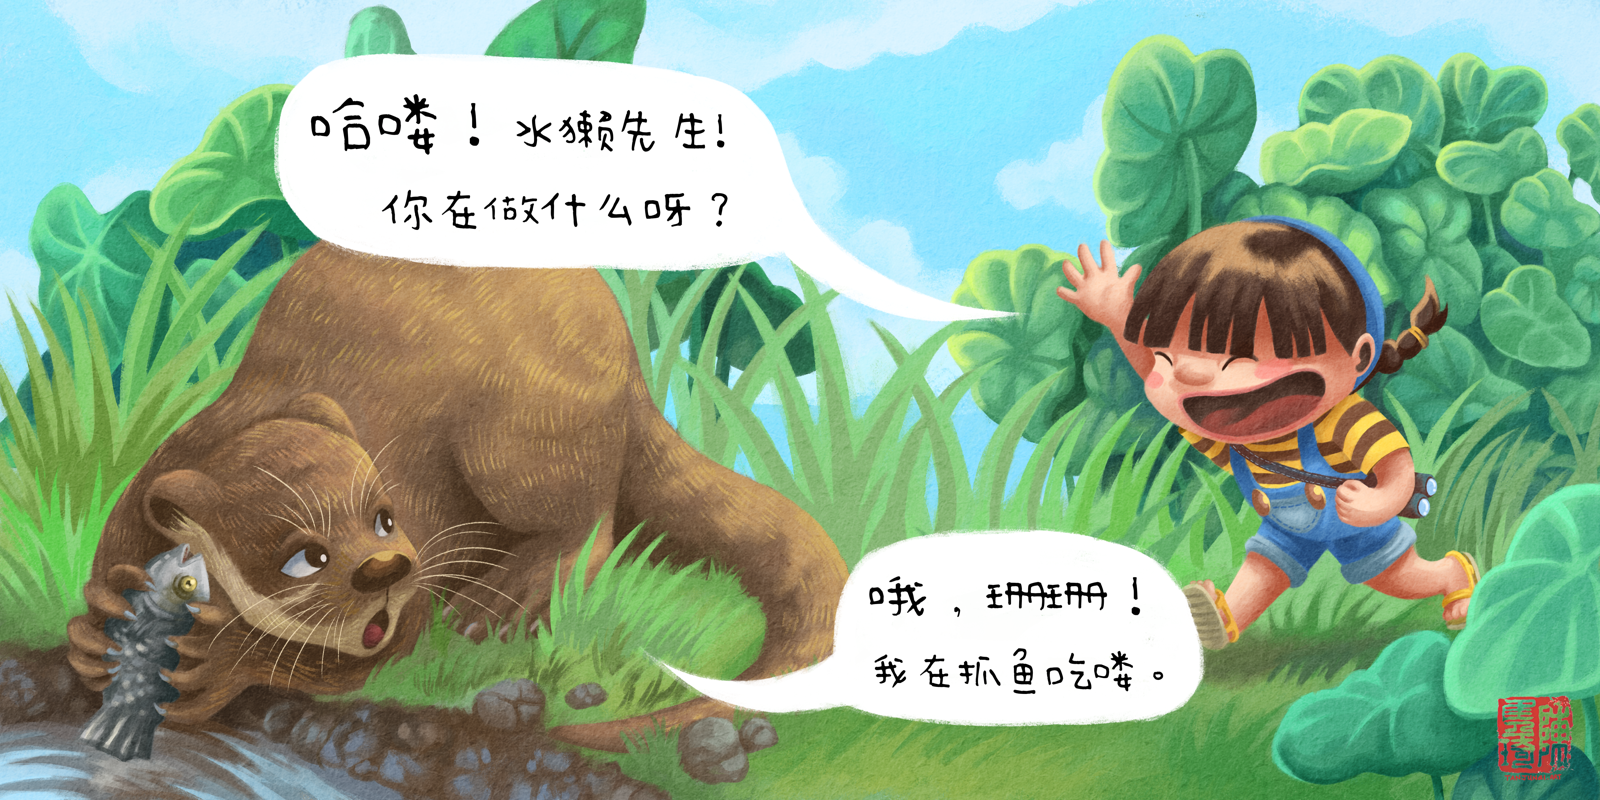 《珊珊和水獭先生》儿童绘本中的跨页图(中文版)，画的是珊珊兴奋地向水獭先生奔跑打招呼；水獭先生手里捧着一条鱼在河岸前蹲着。背景是草木茂盛的公园。